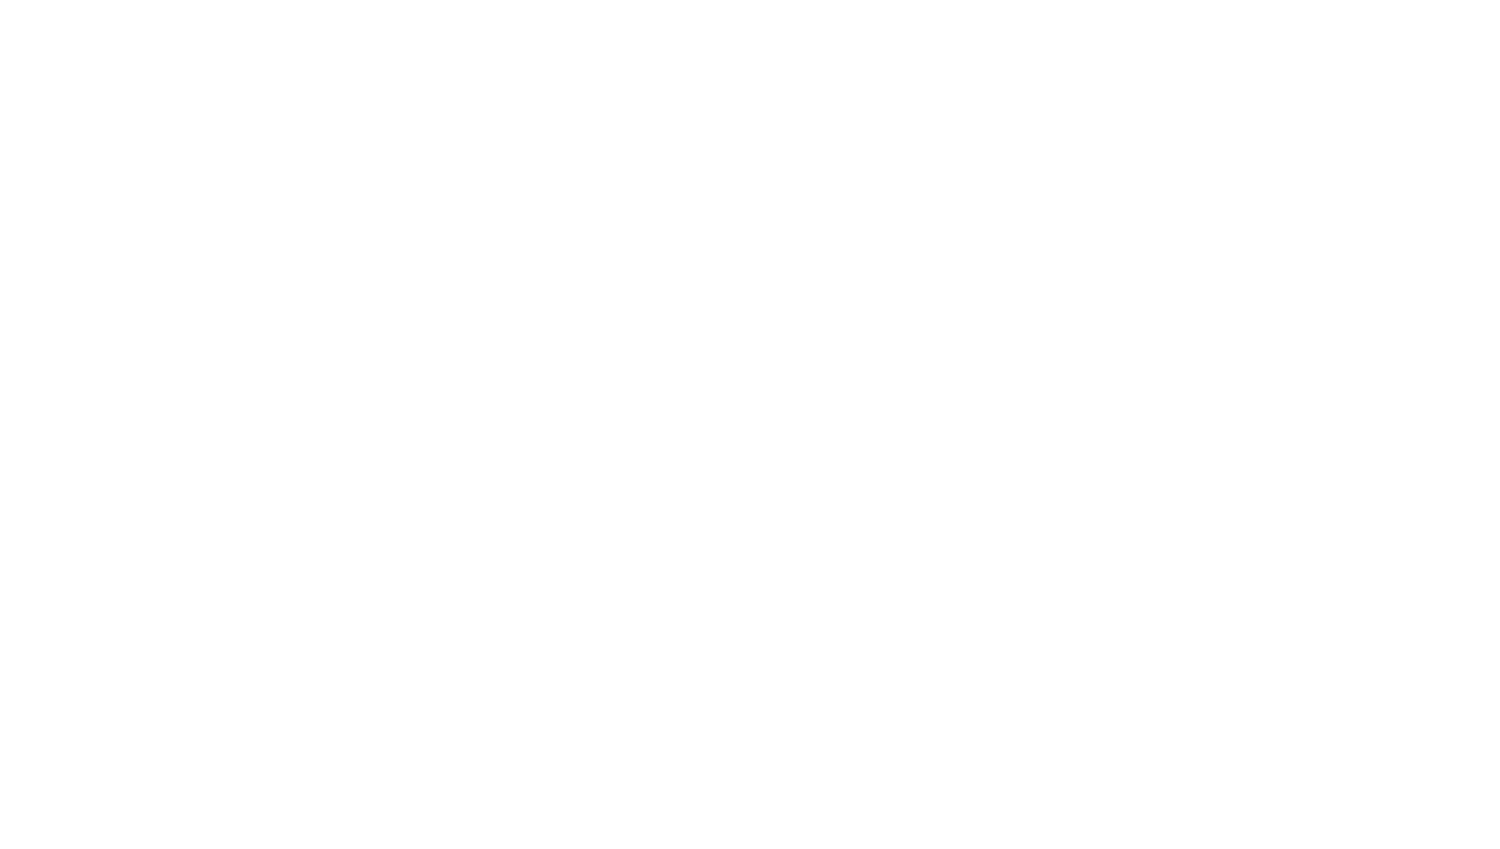 Auburn Ventures